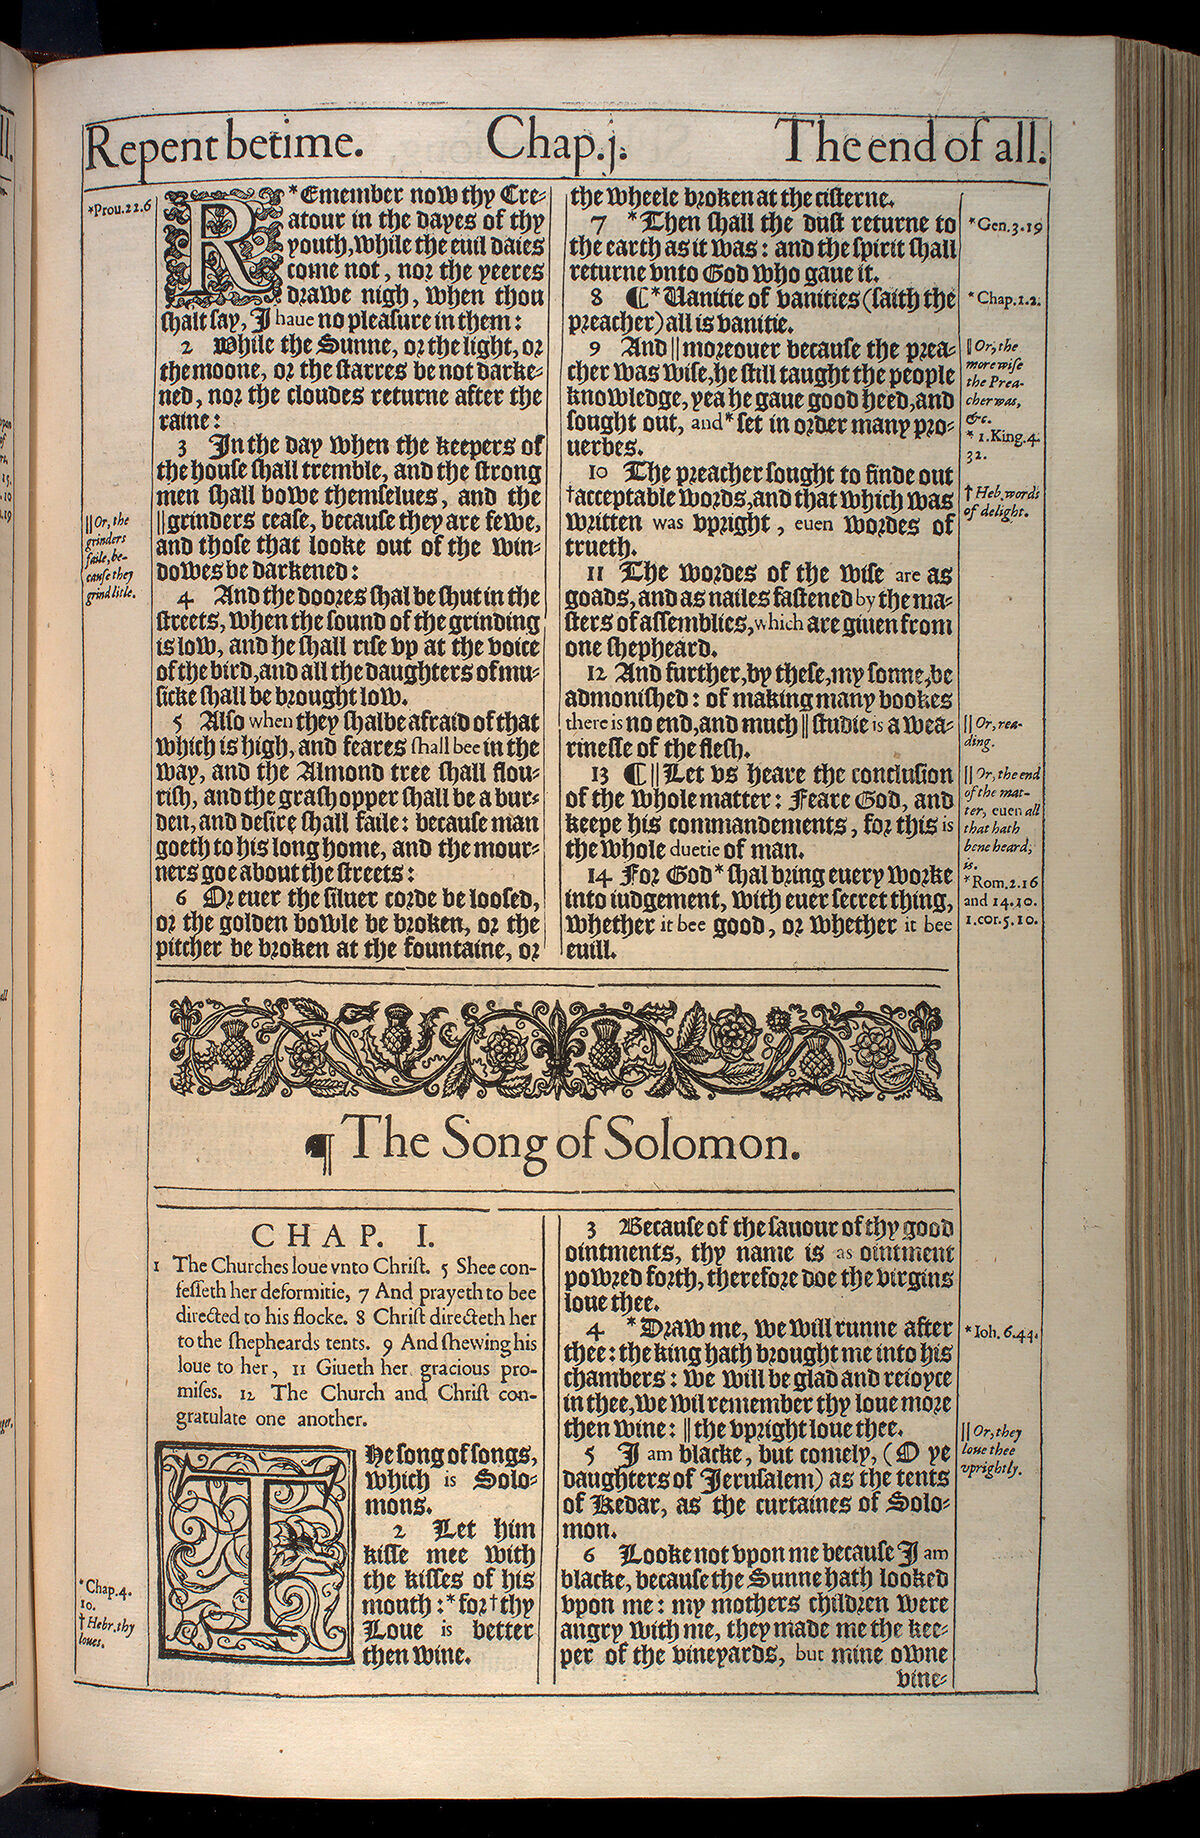 GFD 3/299: Erste Seite des Hohelied Salomos aus der King-James-Bibel, 1611